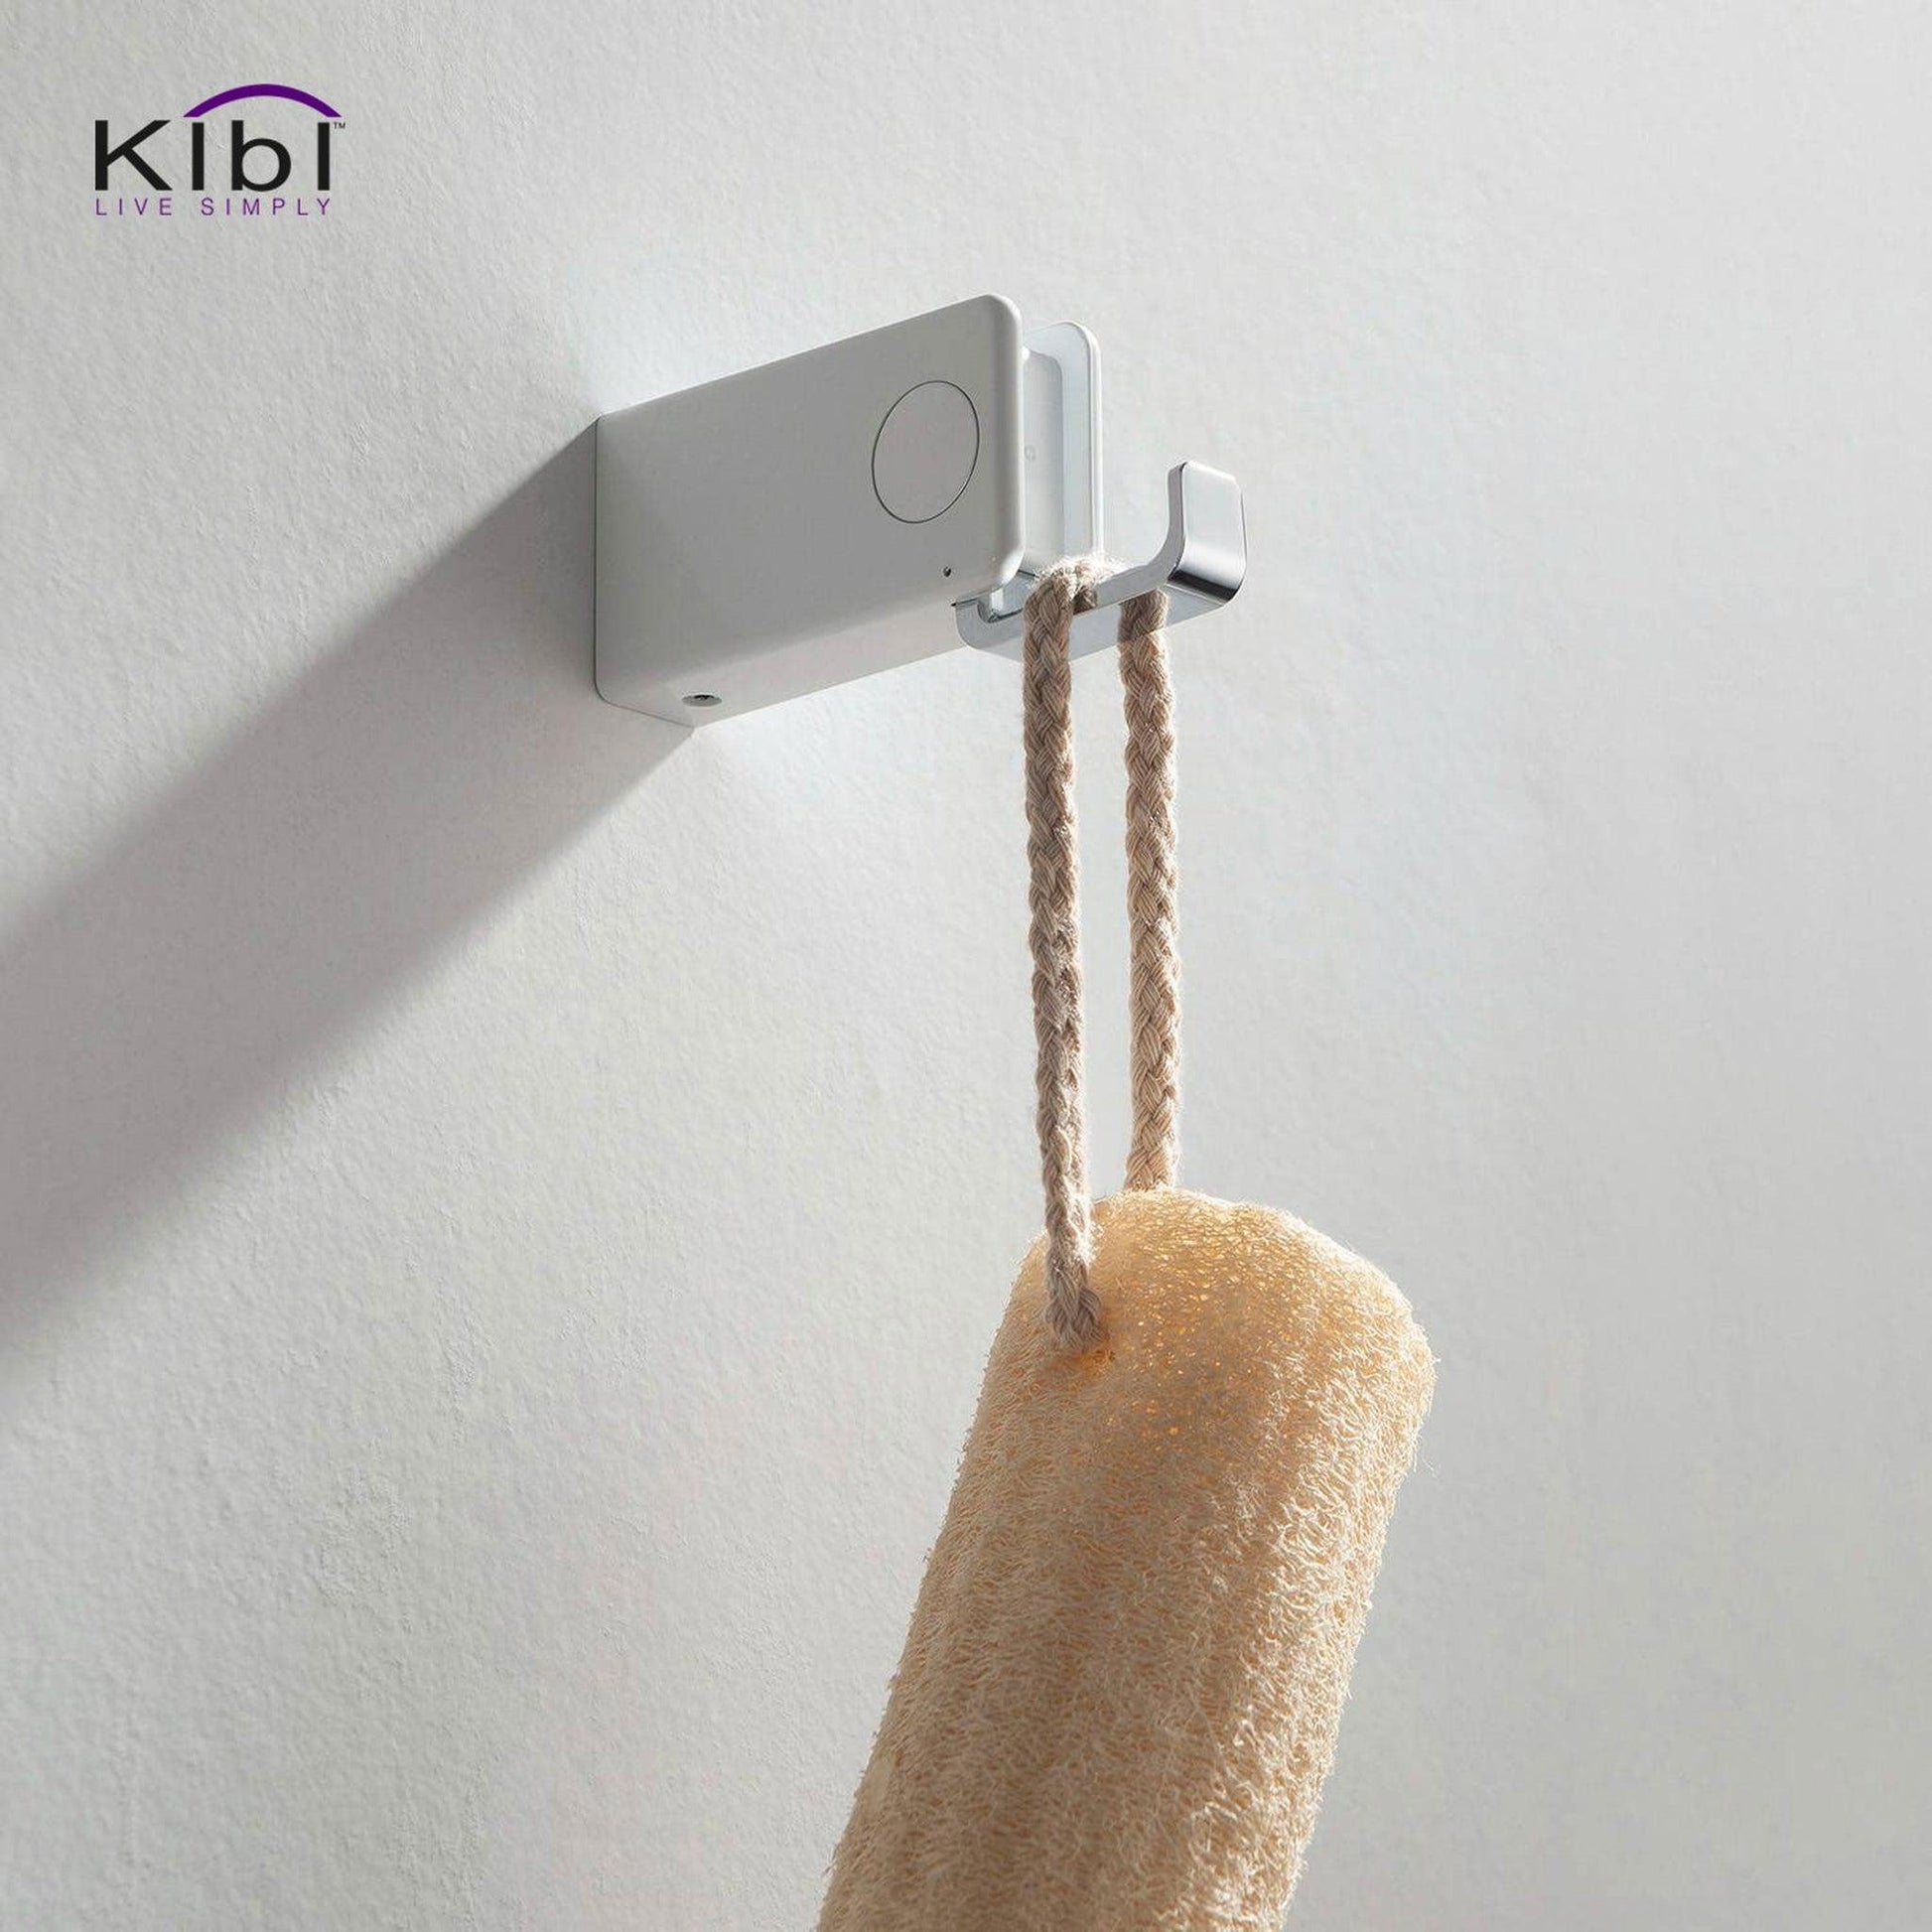 KIBI Artis Bathroom Robe Hook in Chrome White Finish